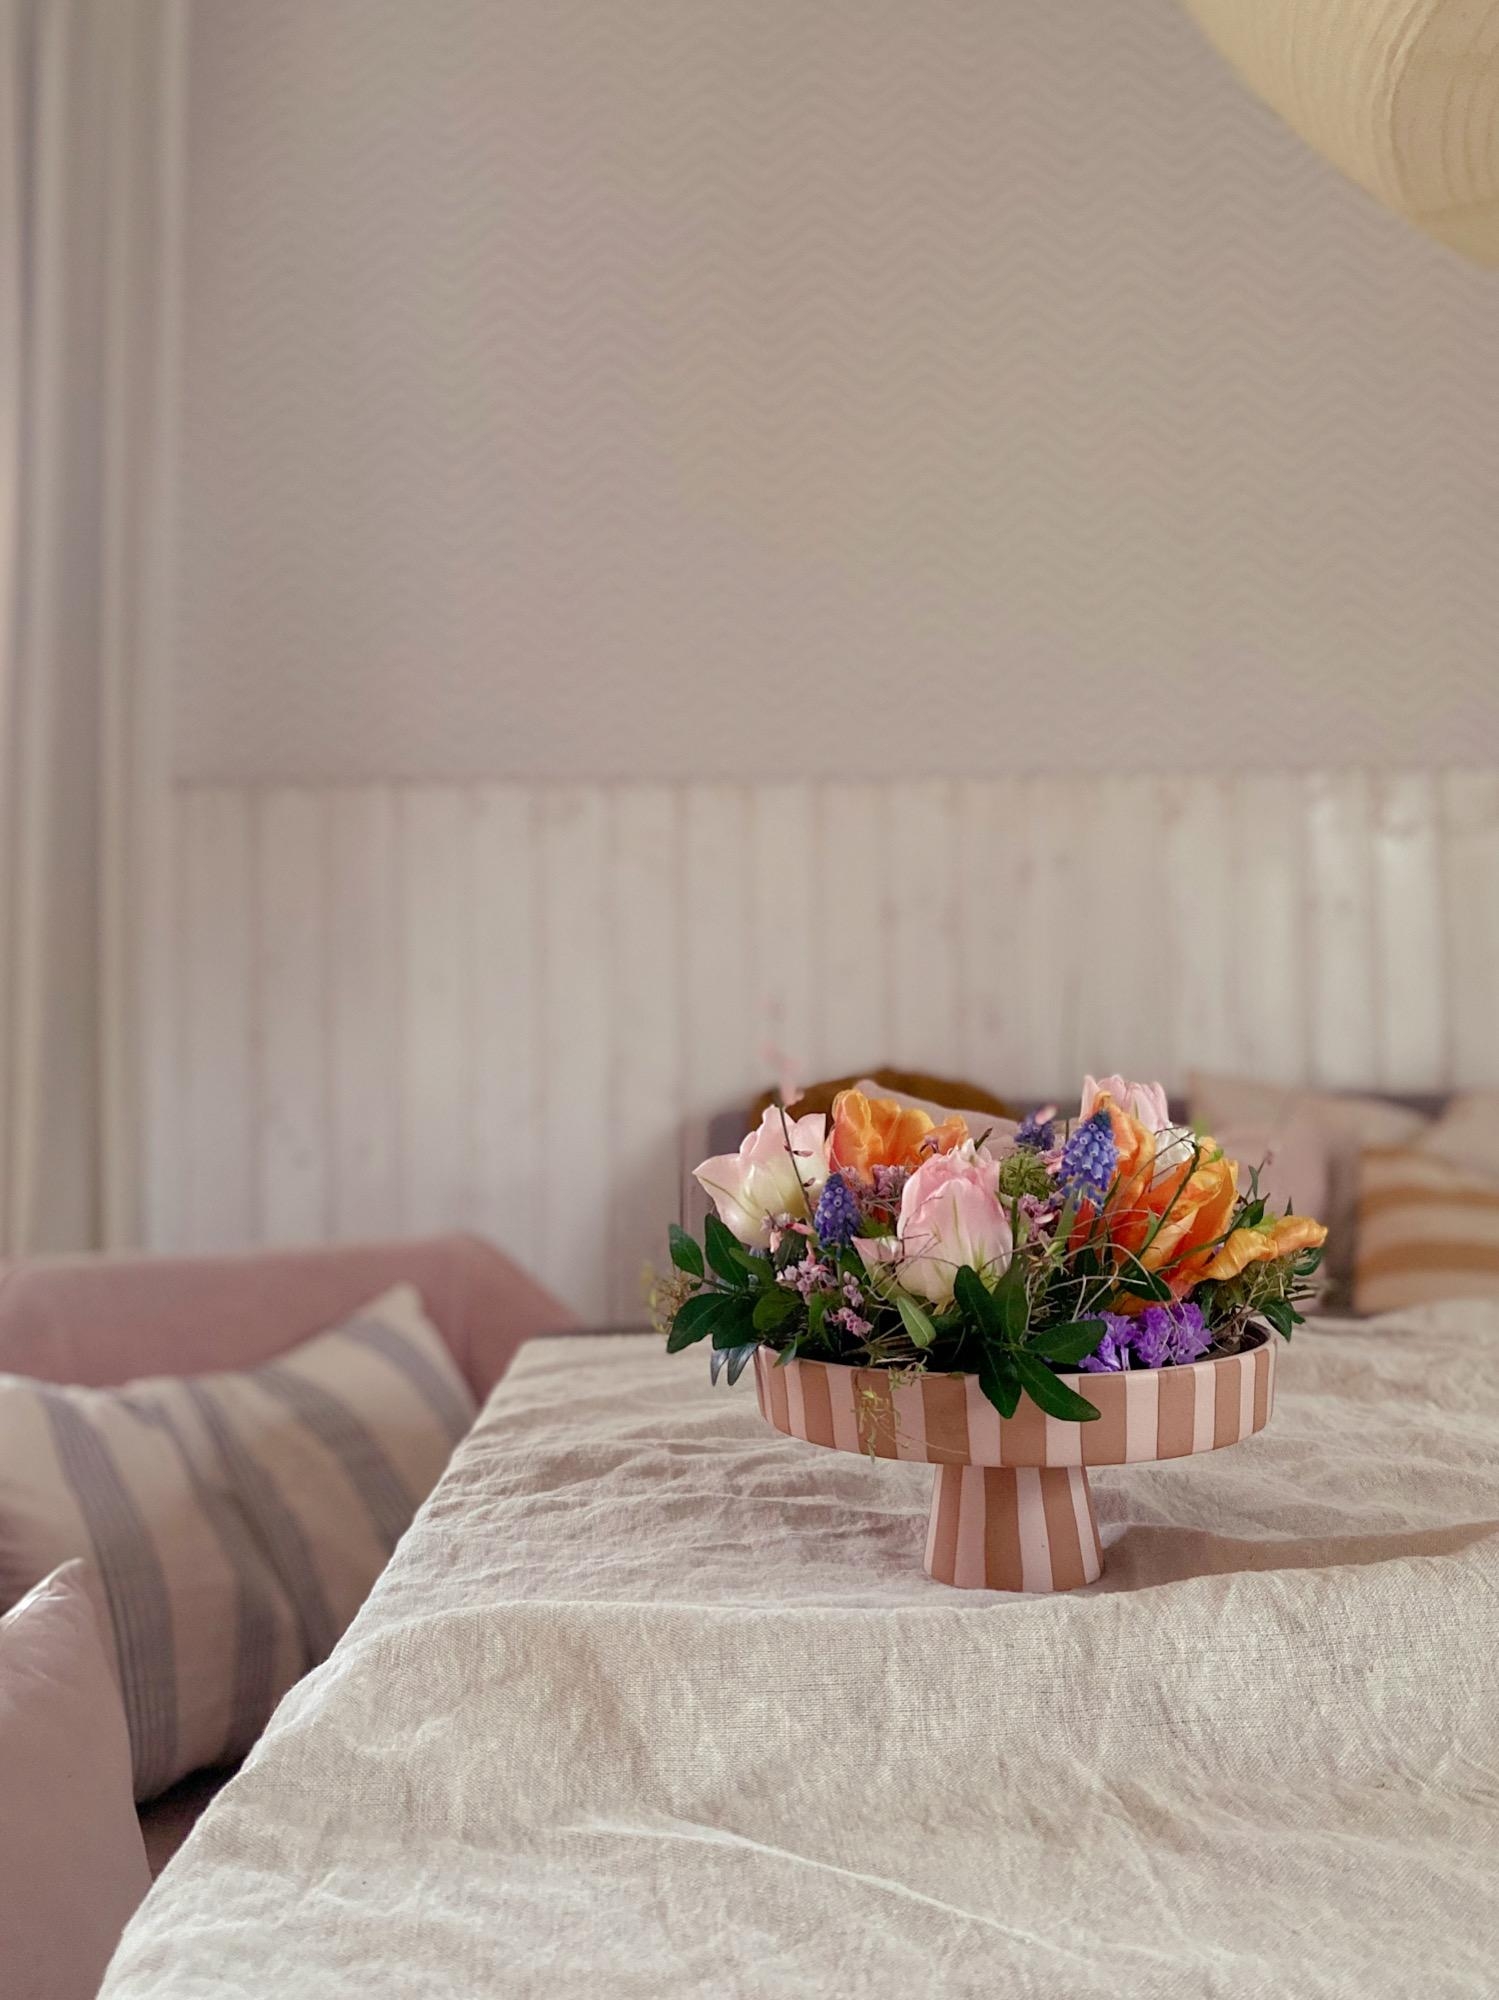 Kranzliebe 
#springvibes#tulpen#wreath#diy#oyoy#tischdeko#homedecor#kranz#flowers